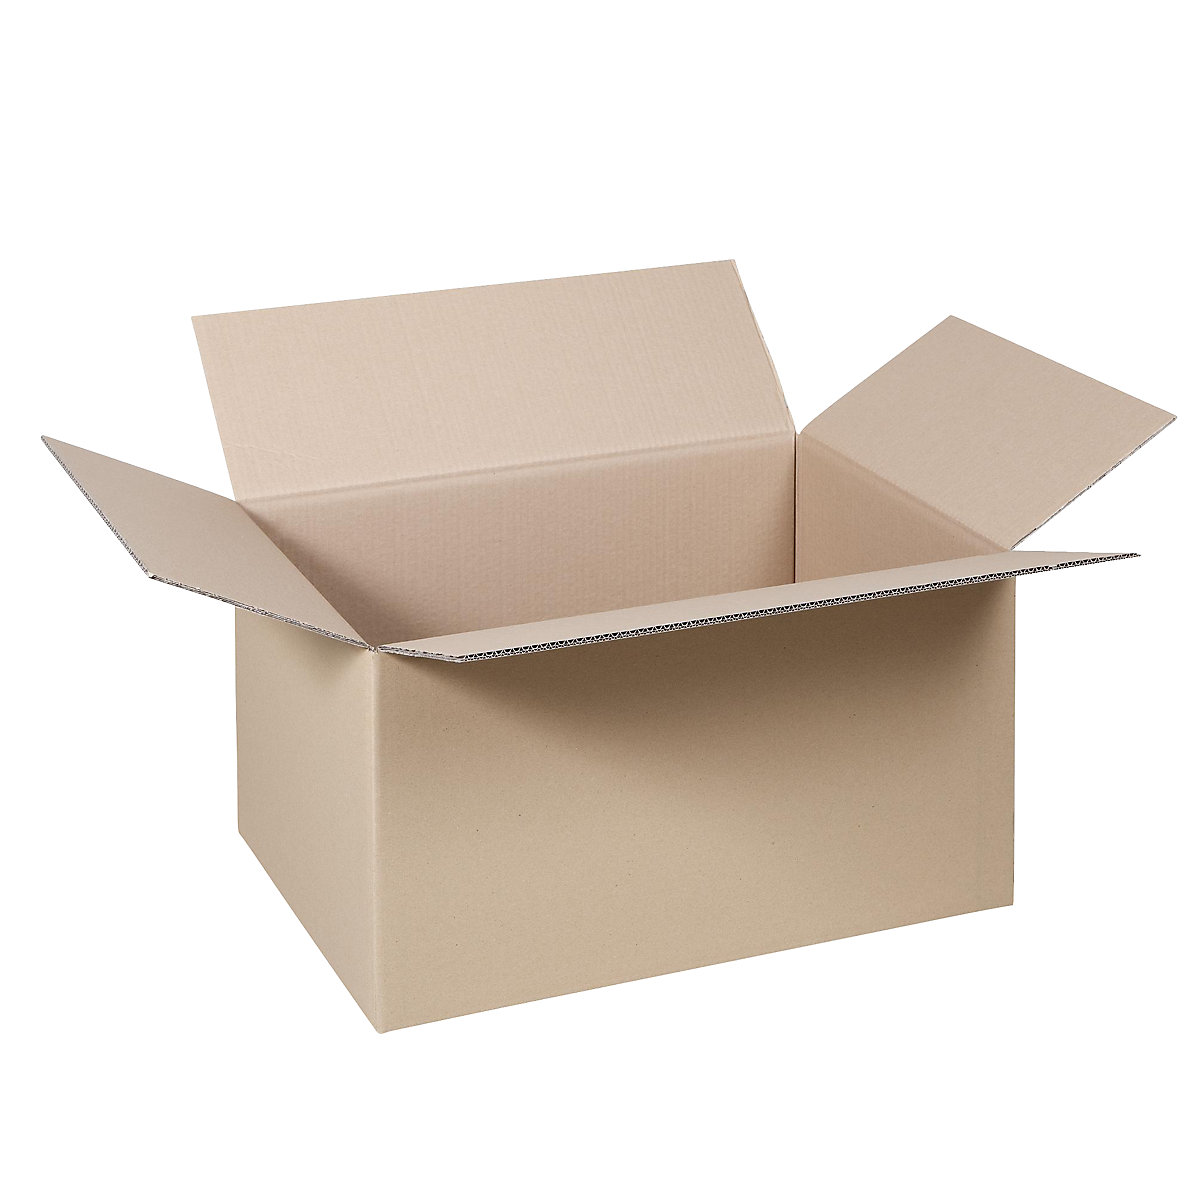 Cutie de carton pliantă, FEFCO 0201, cu 2 straturi de carton ondulat, dimensiuni interioare 300 x 200 x 170 mm, amb. 100 buc.-10